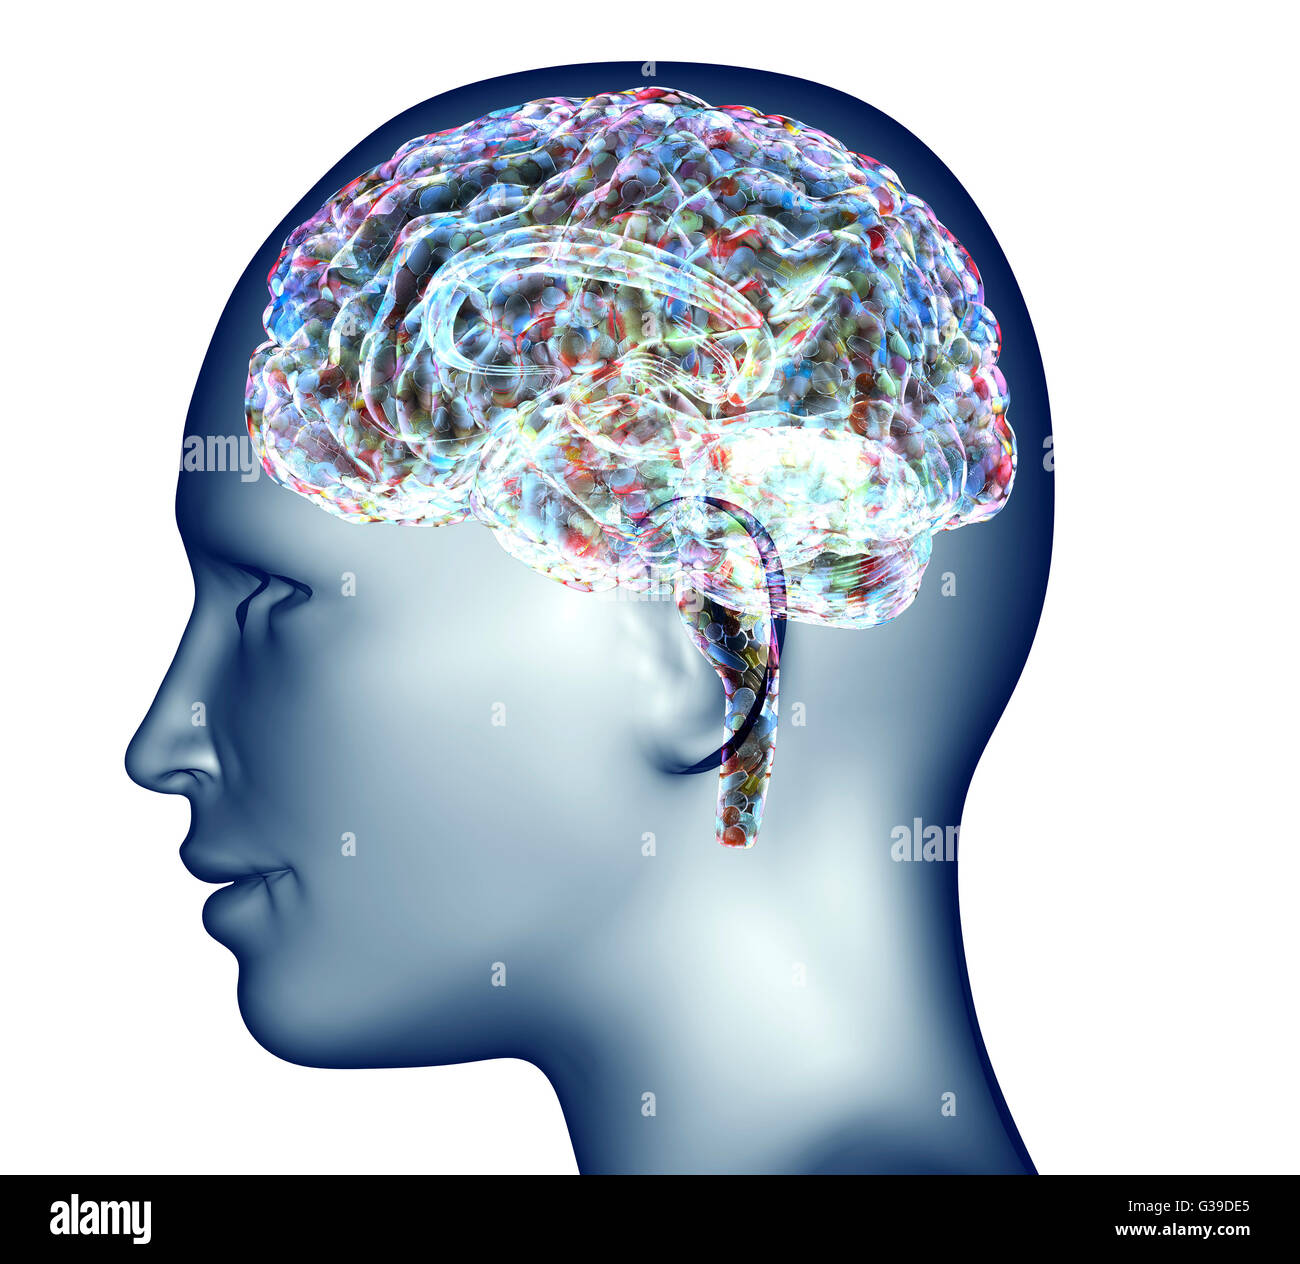 Radiografía de la cabeza humana con pastillas y medicamentos para el cerebro. Foto de stock